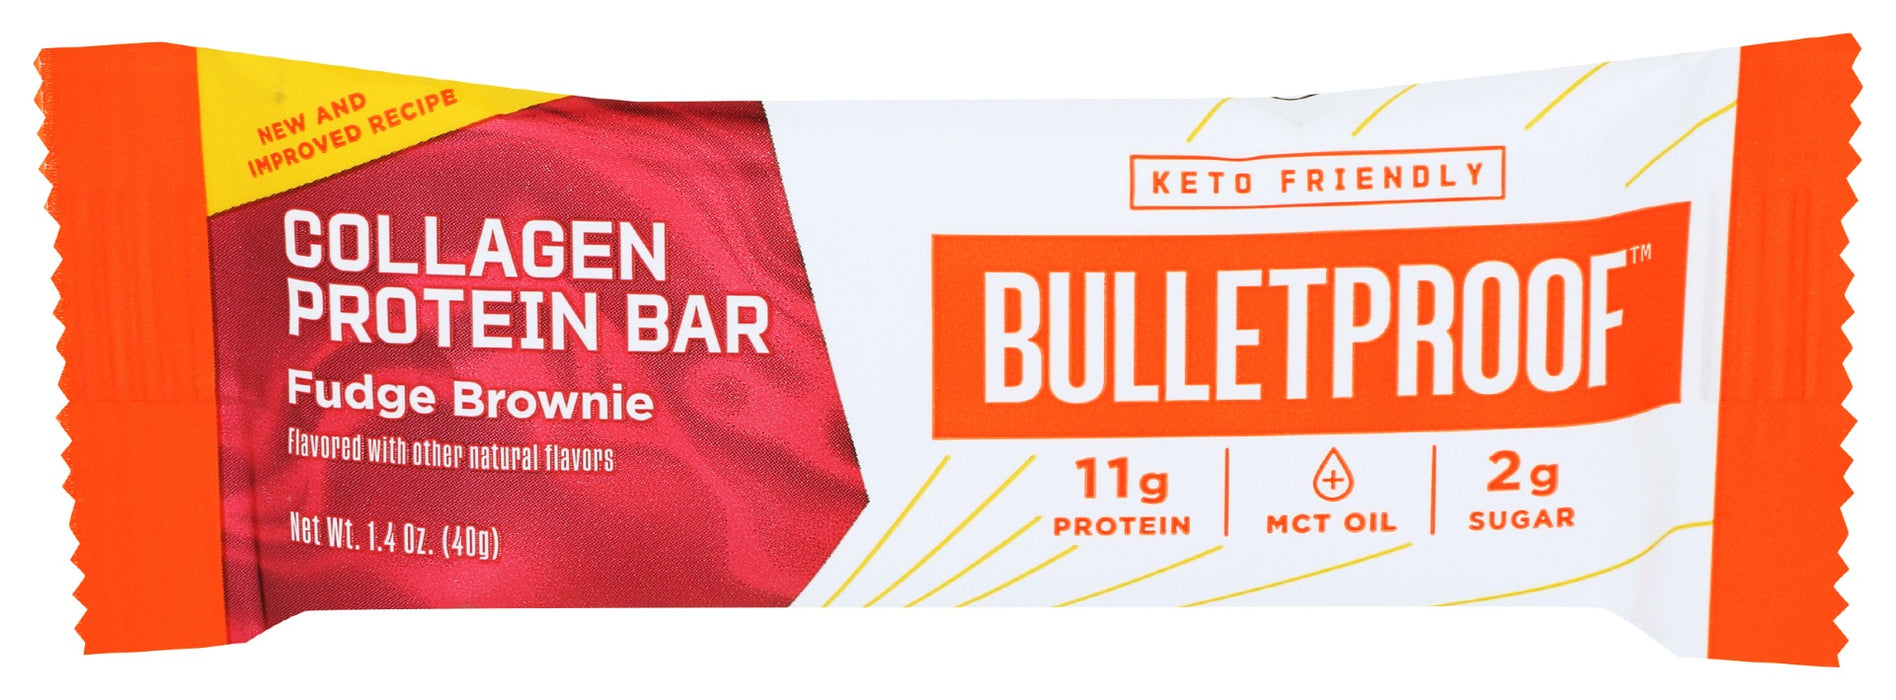 BULLETPROOF: Collagen Protein Bar Fudge Brownie, 1.4 oz